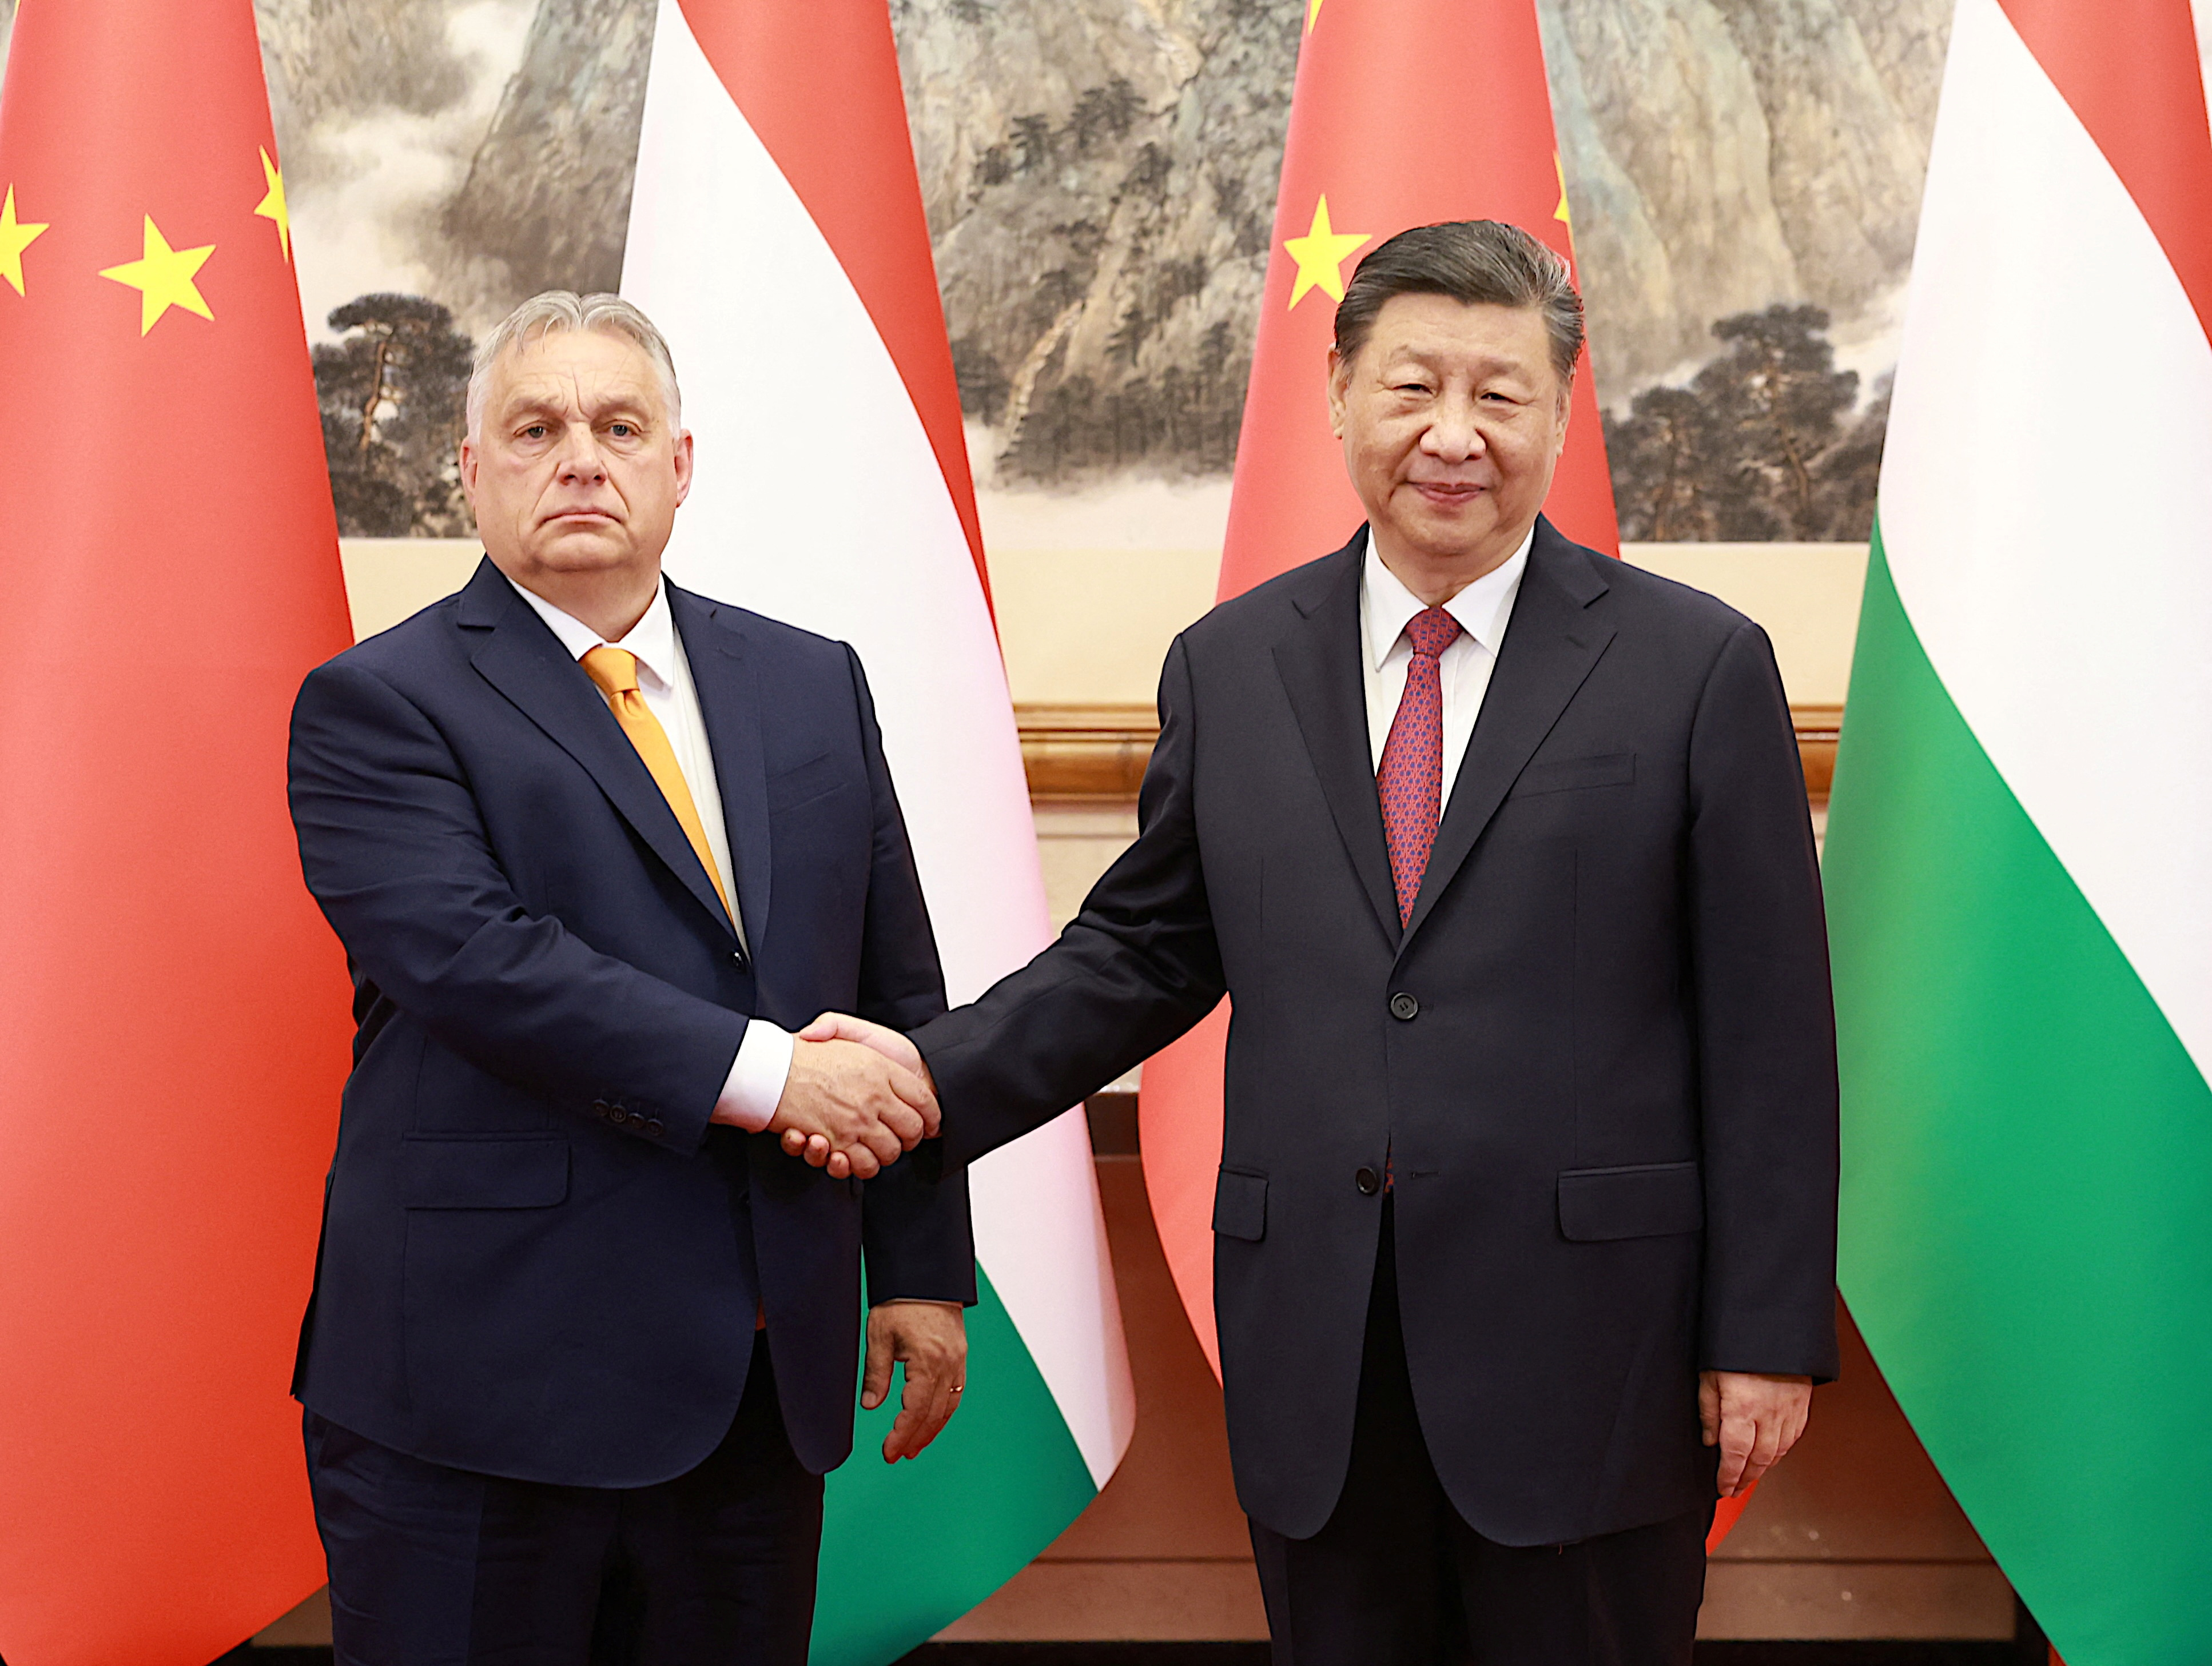 Hungary Prime Minister Viktor Orban visits China